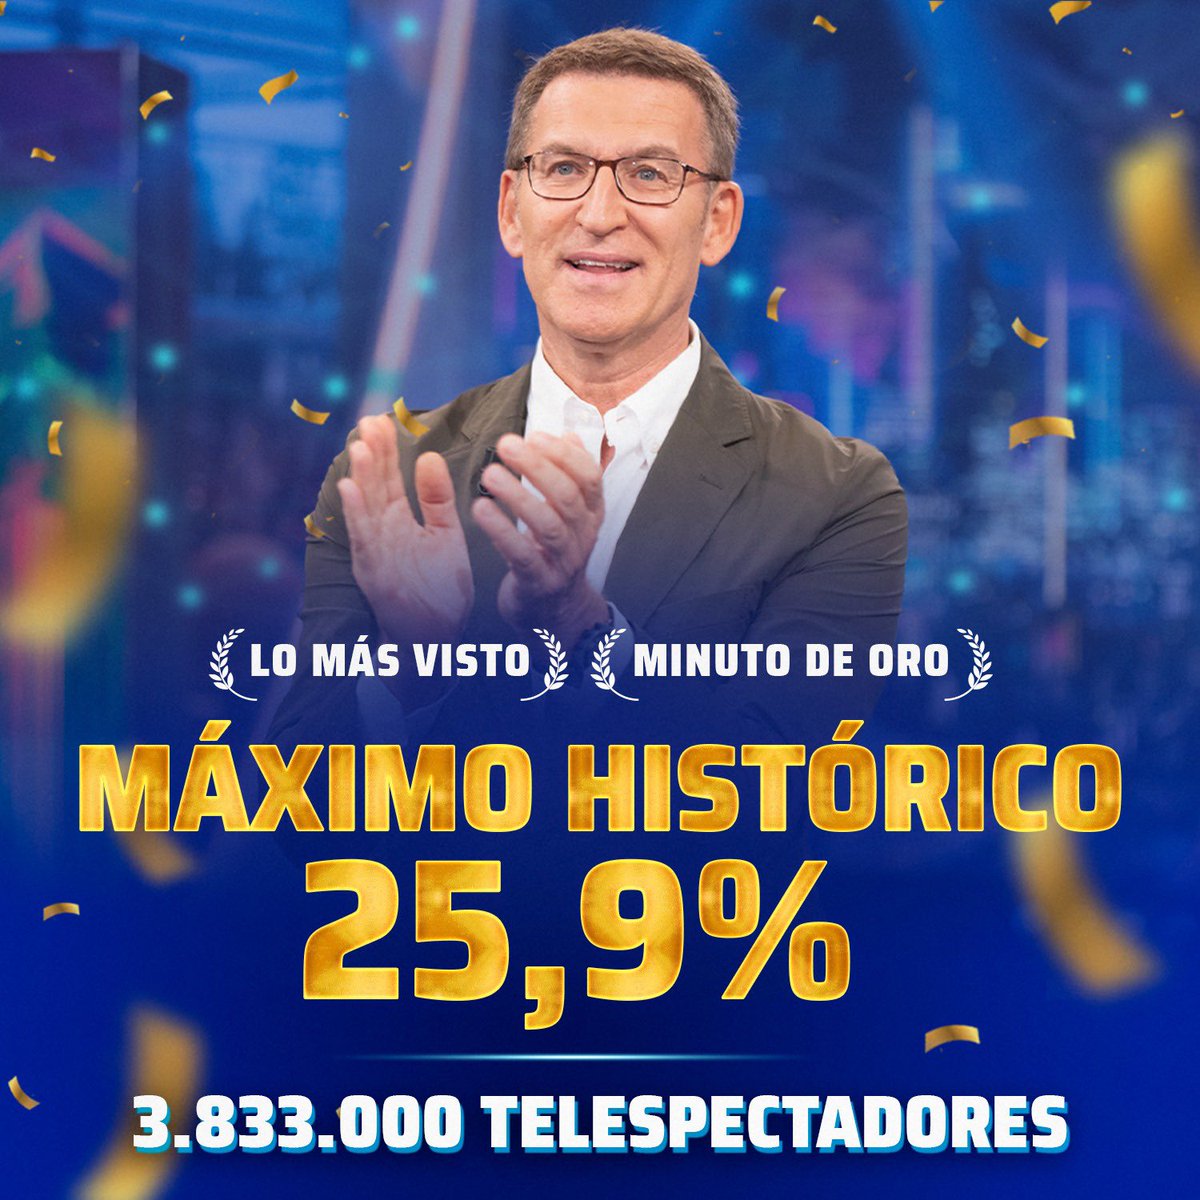 Anoche conseguimos nuestro MÁXIMO HISTÓRICO con un 25.9% de share. La visita de @NunezFeijoo se convirtió en LO MÁS VISTO y MINUTO DE ORO con 3.833.000 telespectadores ¡GRACIAS! ❤️ #audiencias #FeijóoEH